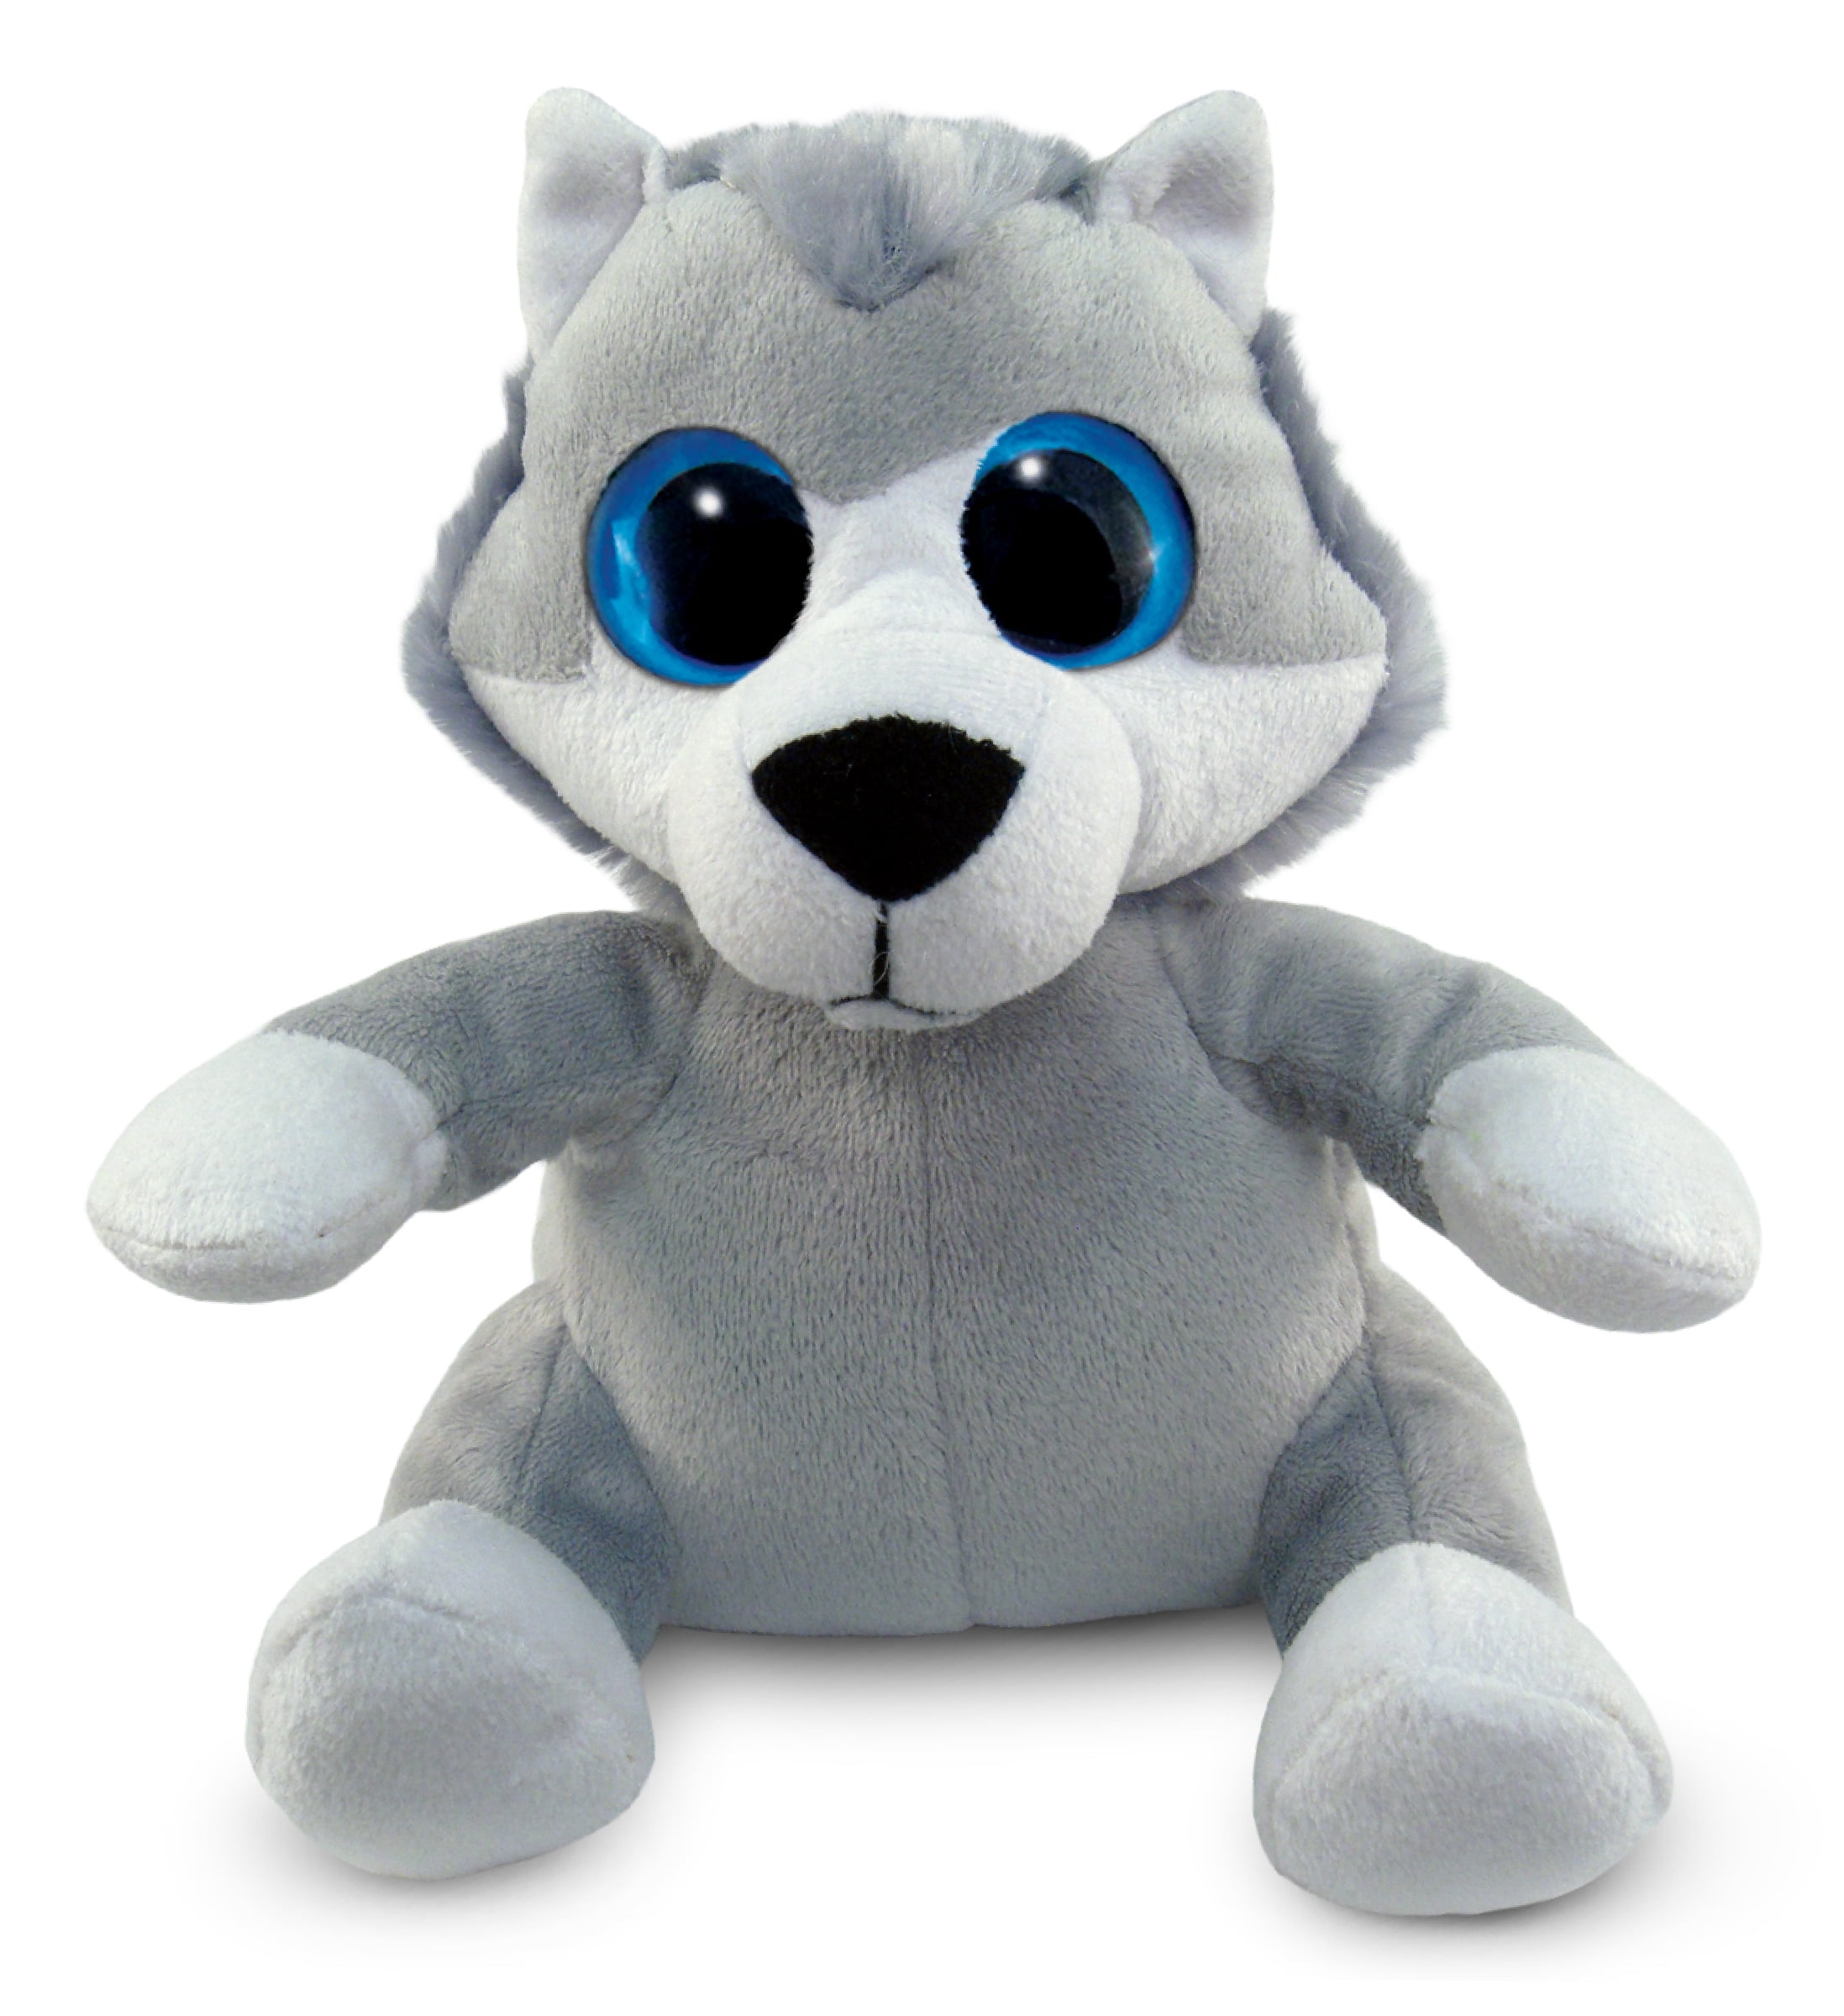 Dollibu Plush Wolf Stuffed Animal